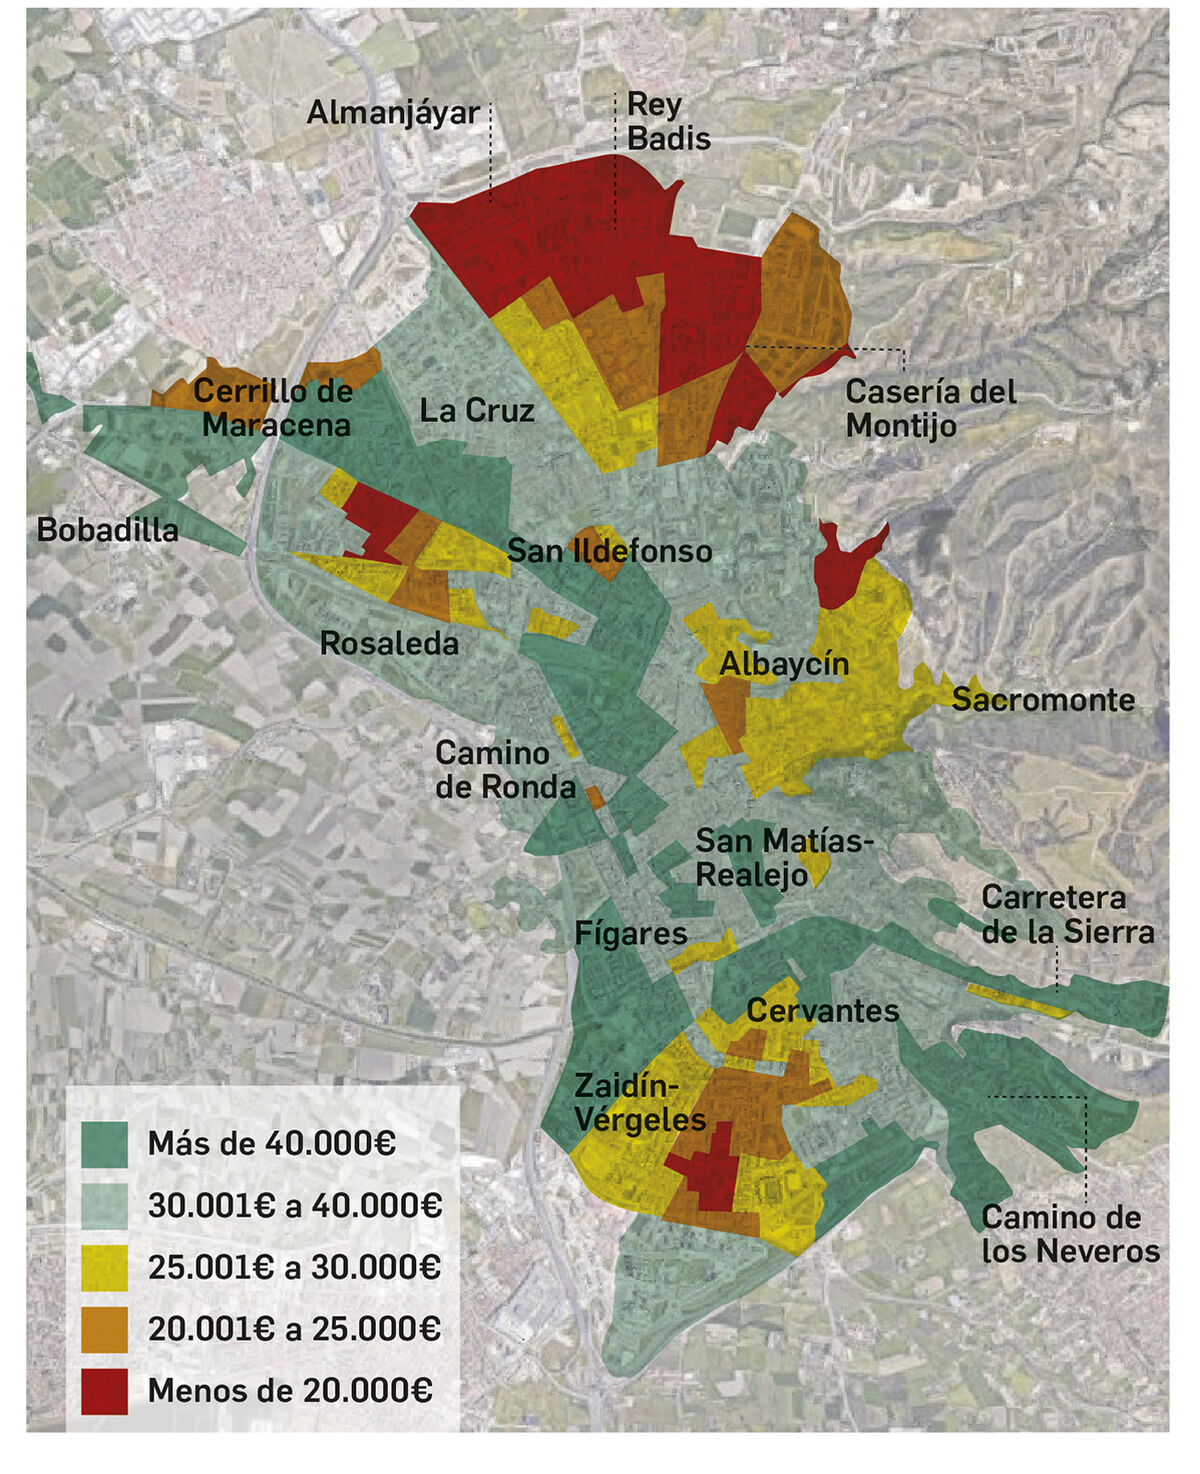 Mapa del nivel de renta en Granada por barrios